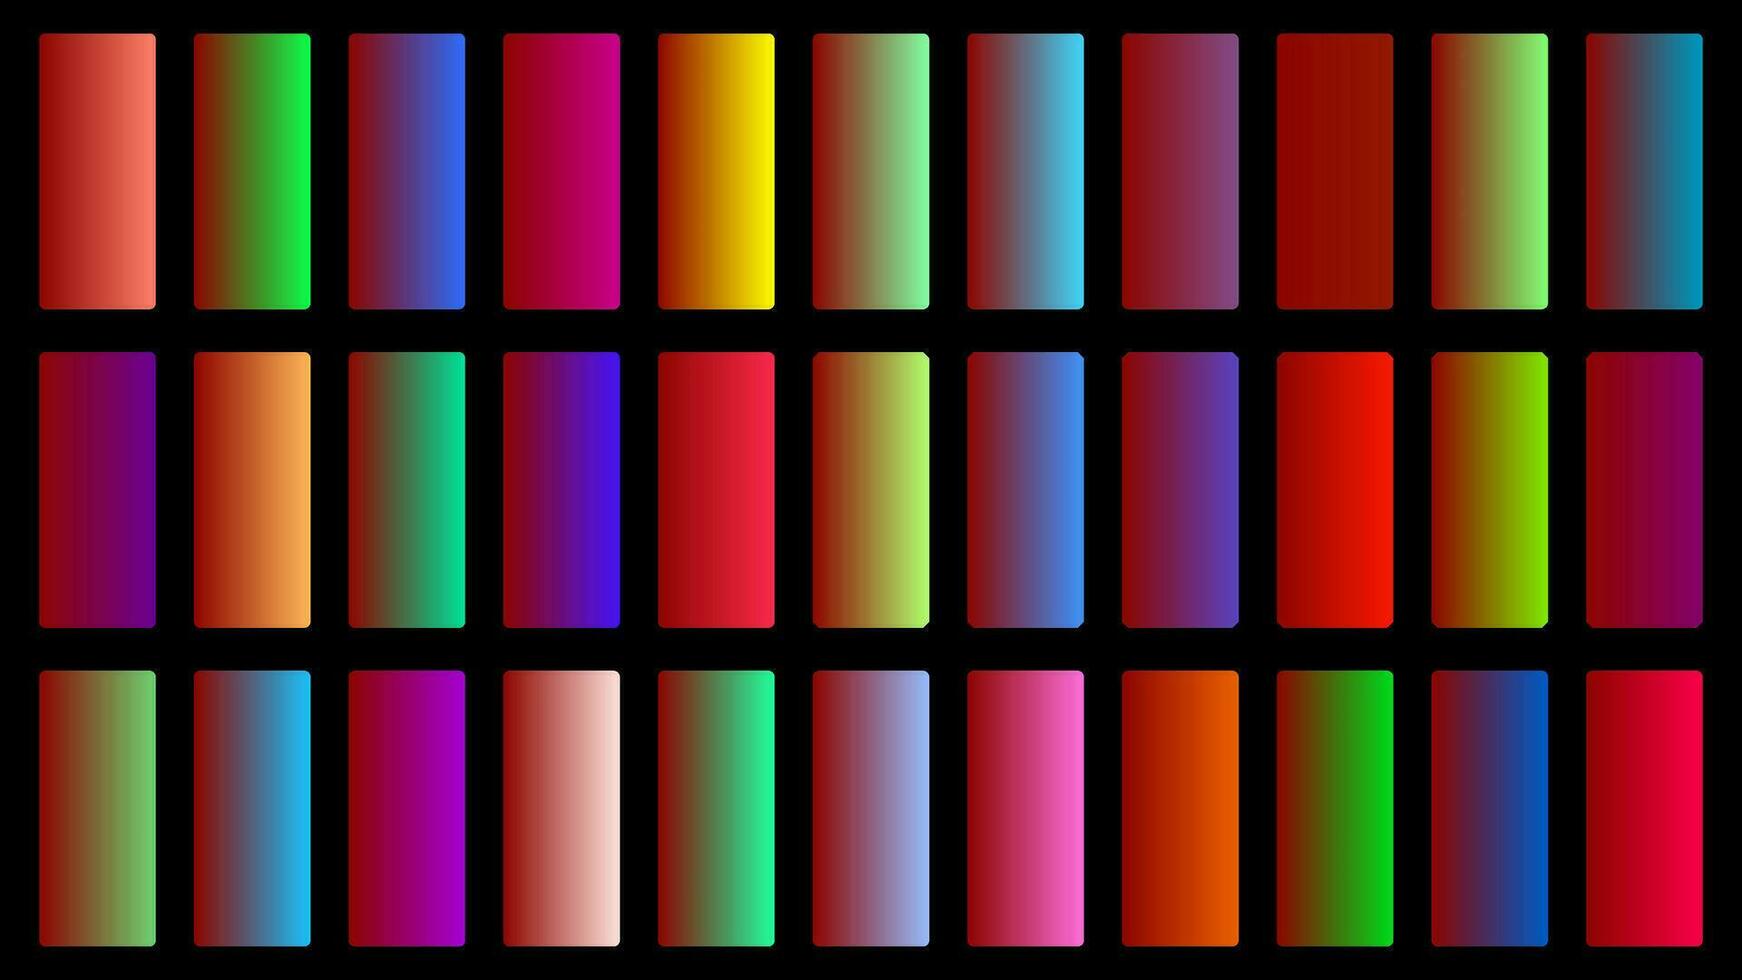 coloré rubis Couleur ombre linéaire pente palette échantillons la toile trousse arrondi rectangles modèle ensemble vecteur